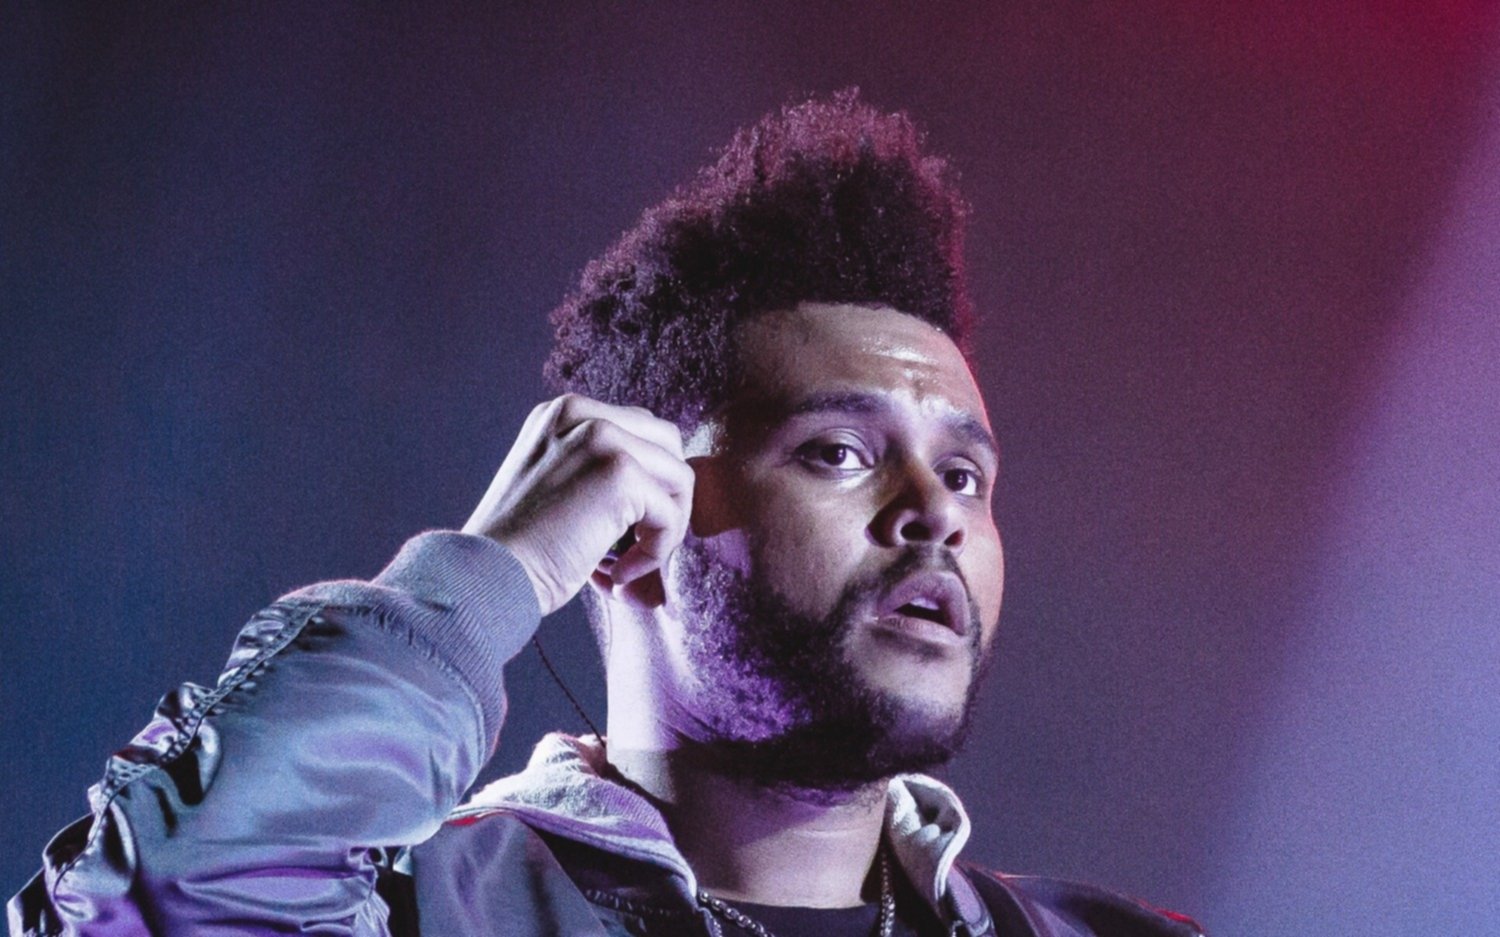 Mientras prepara su despedida en River, The Weeknd lanza su último tema 